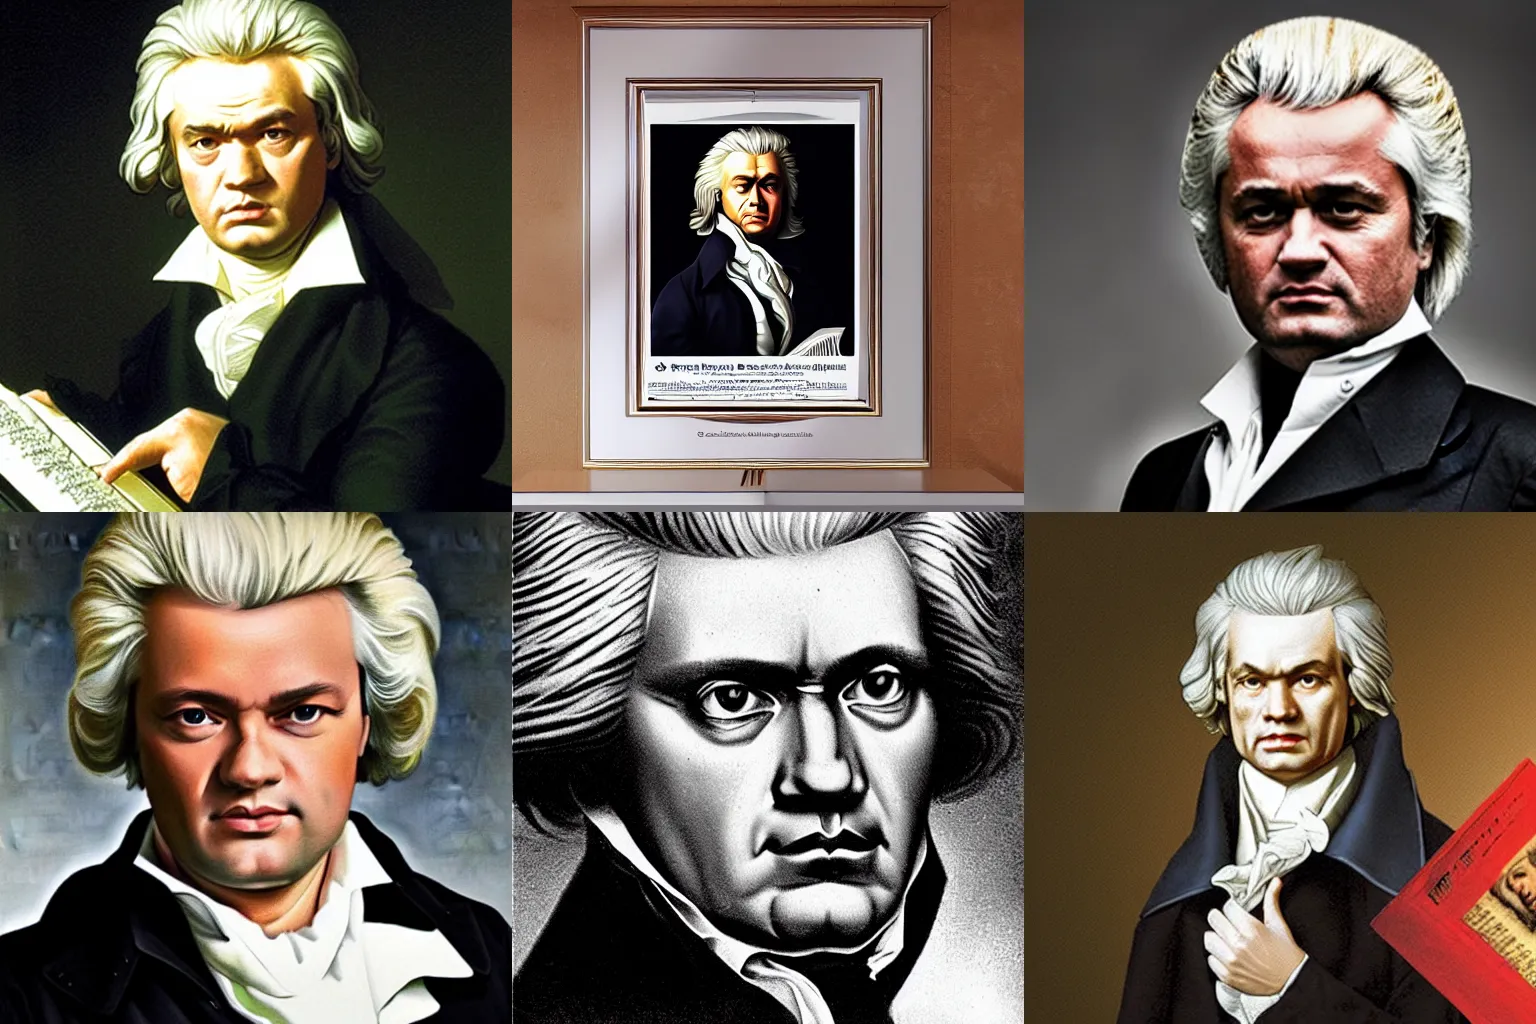 Prompt: Geert Wilders as Beethoven